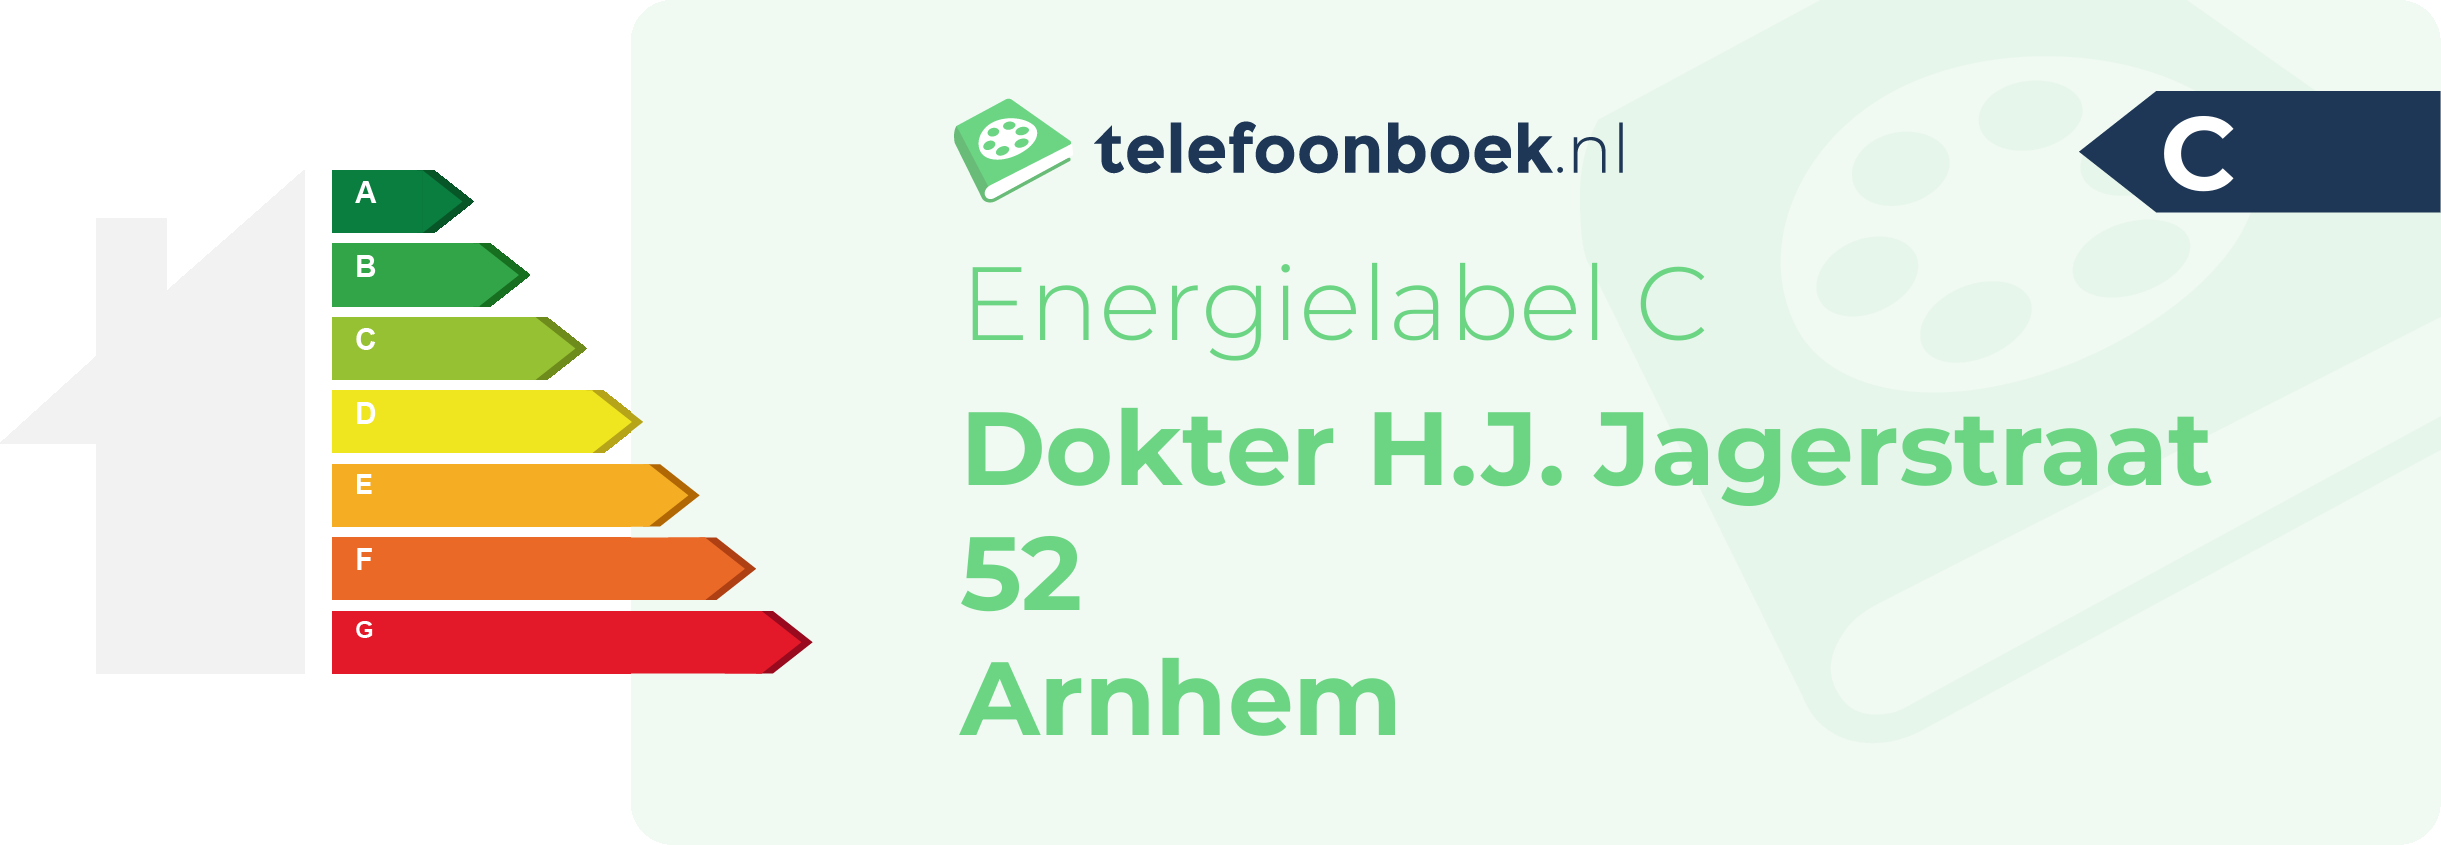 Energielabel Dokter H.J. Jagerstraat 52 Arnhem